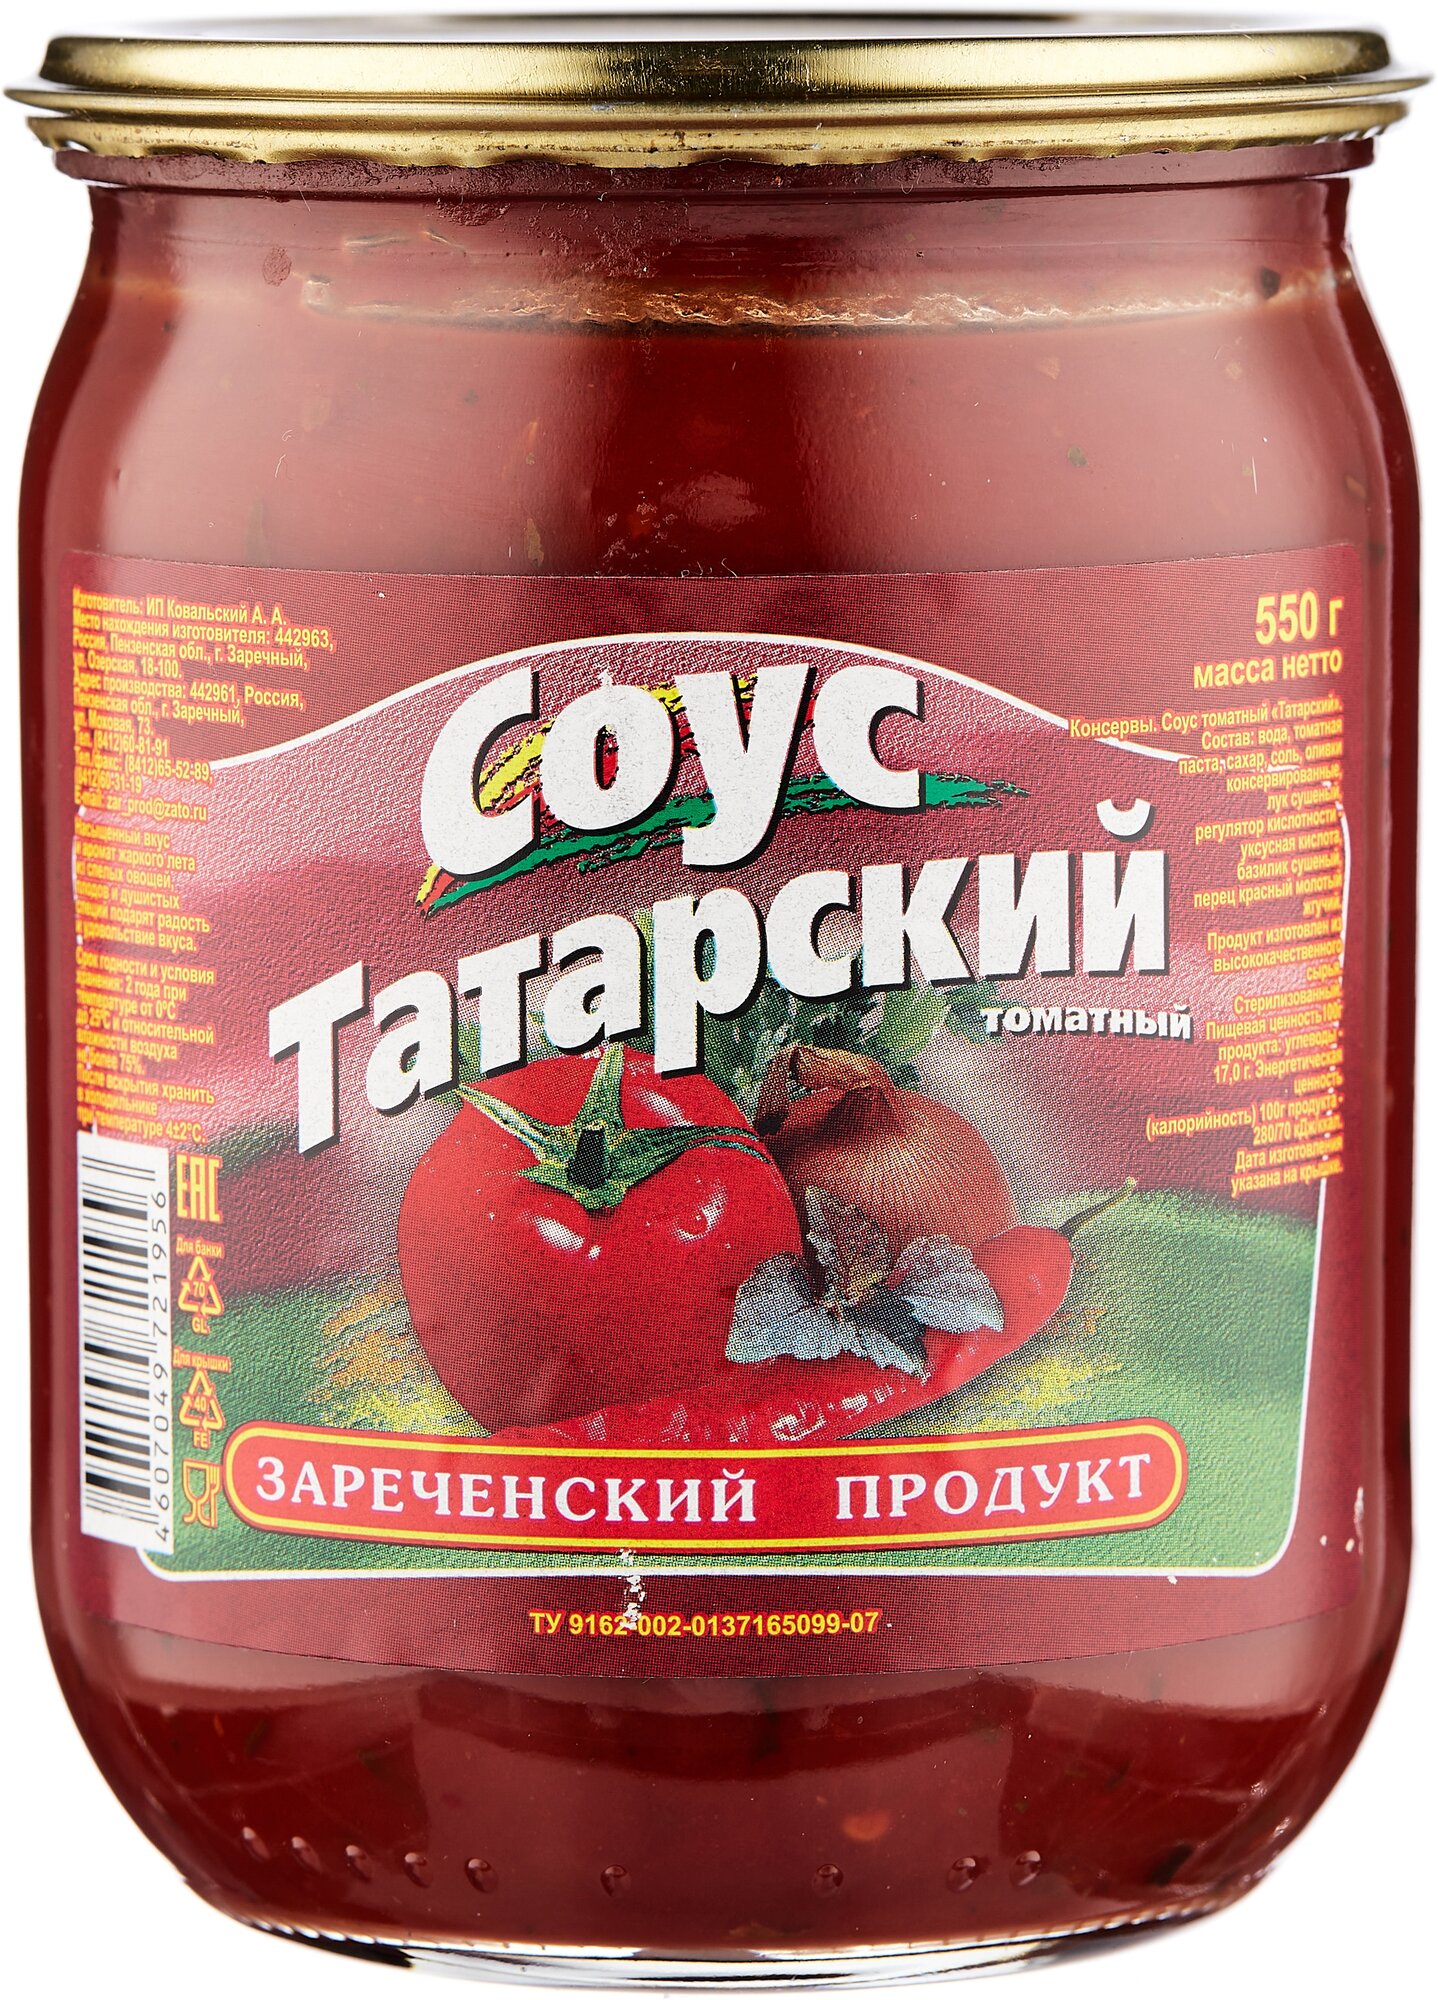 Соус томатный "Зареченский продукт" Татарский 550 гр